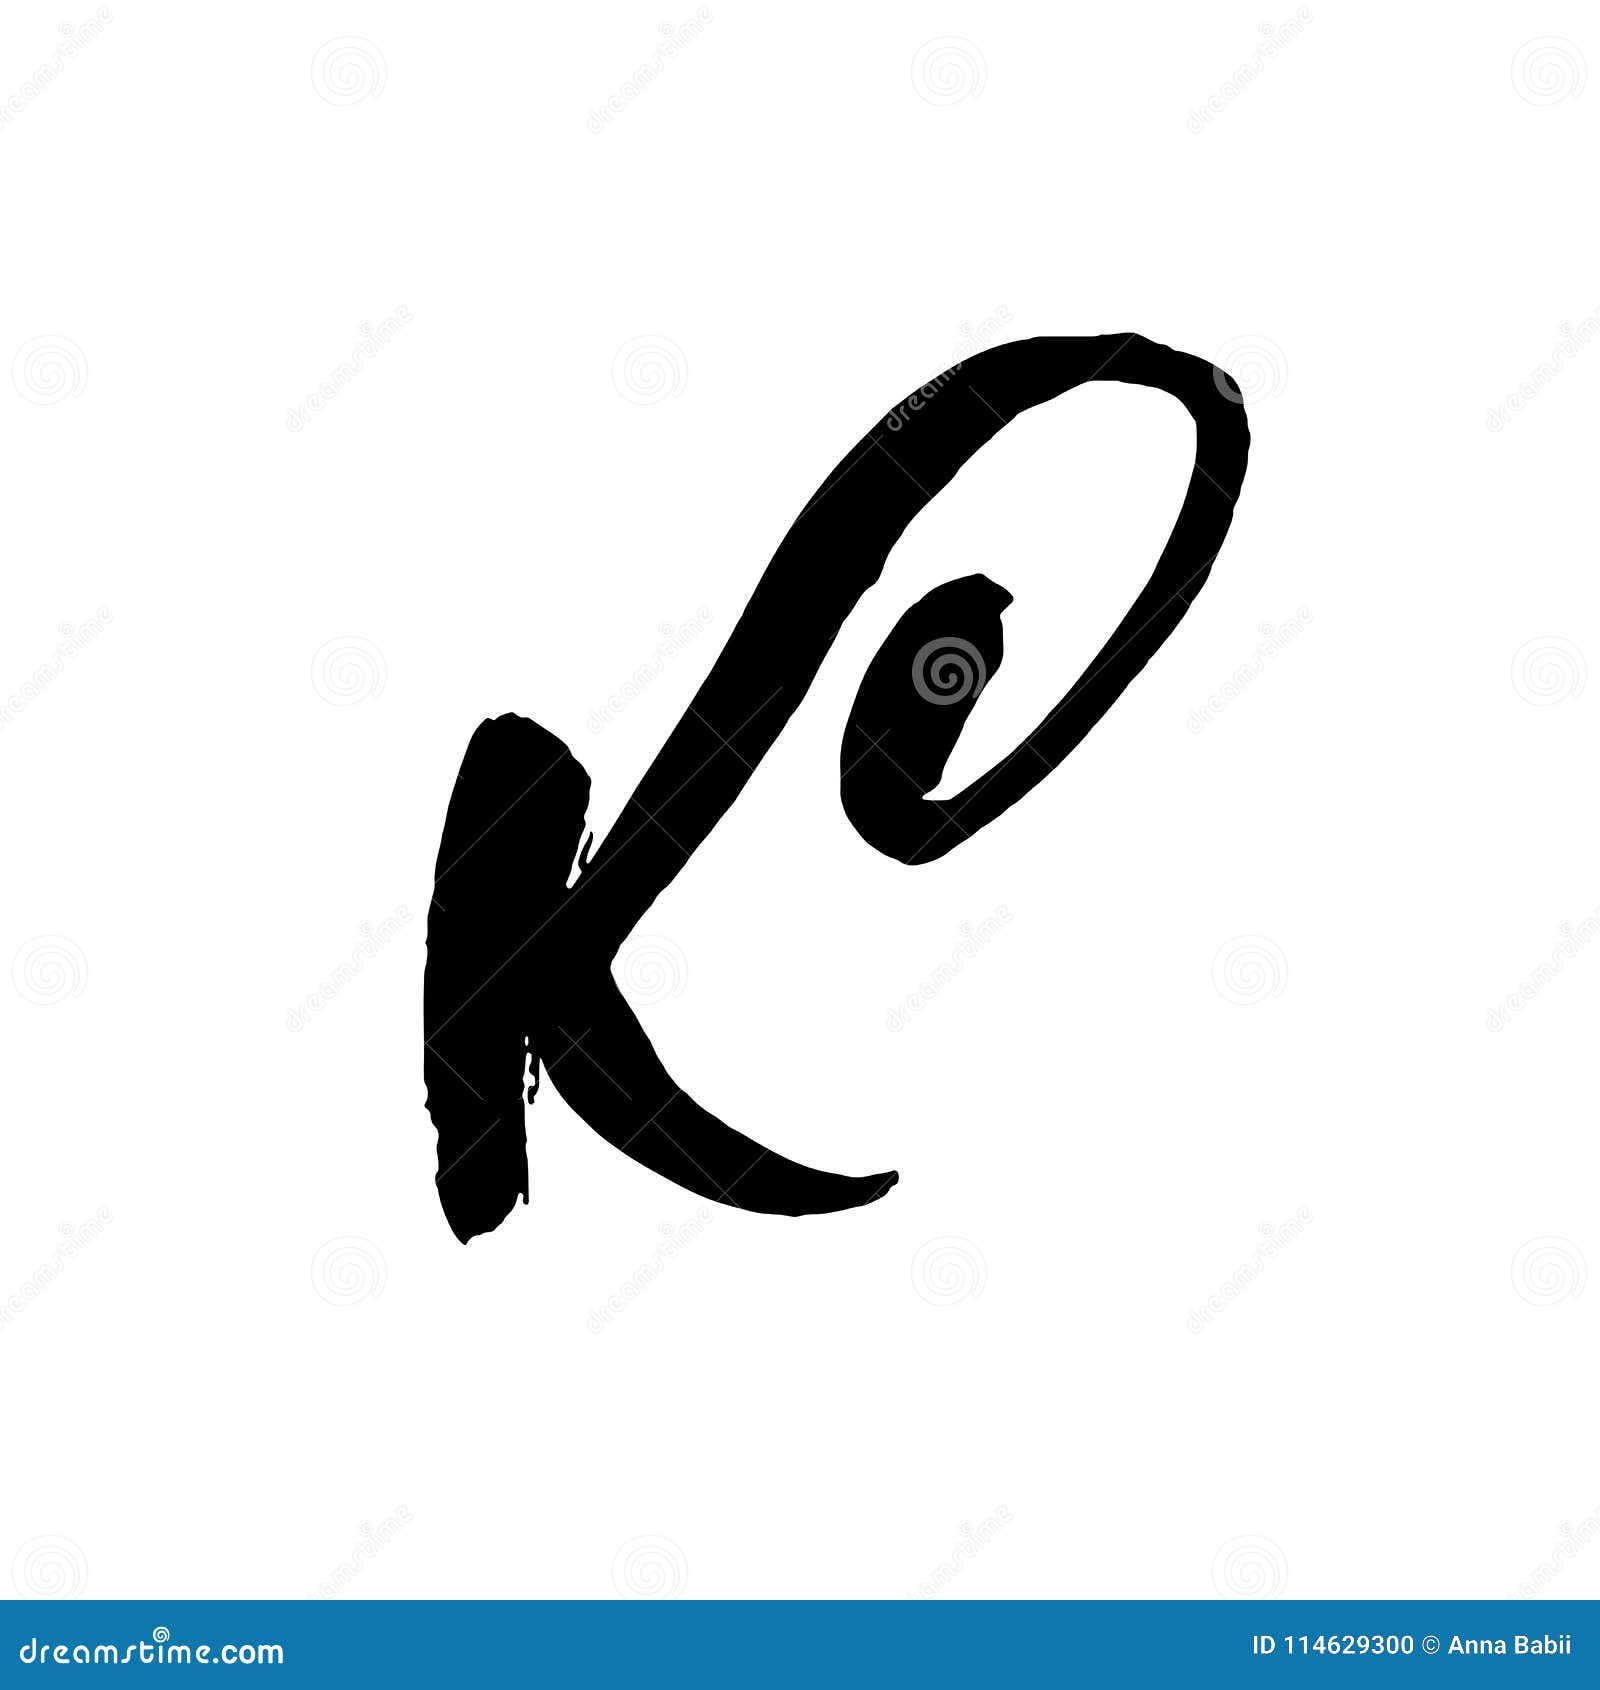 letter-k-handwritten-dry-brush-rough-str